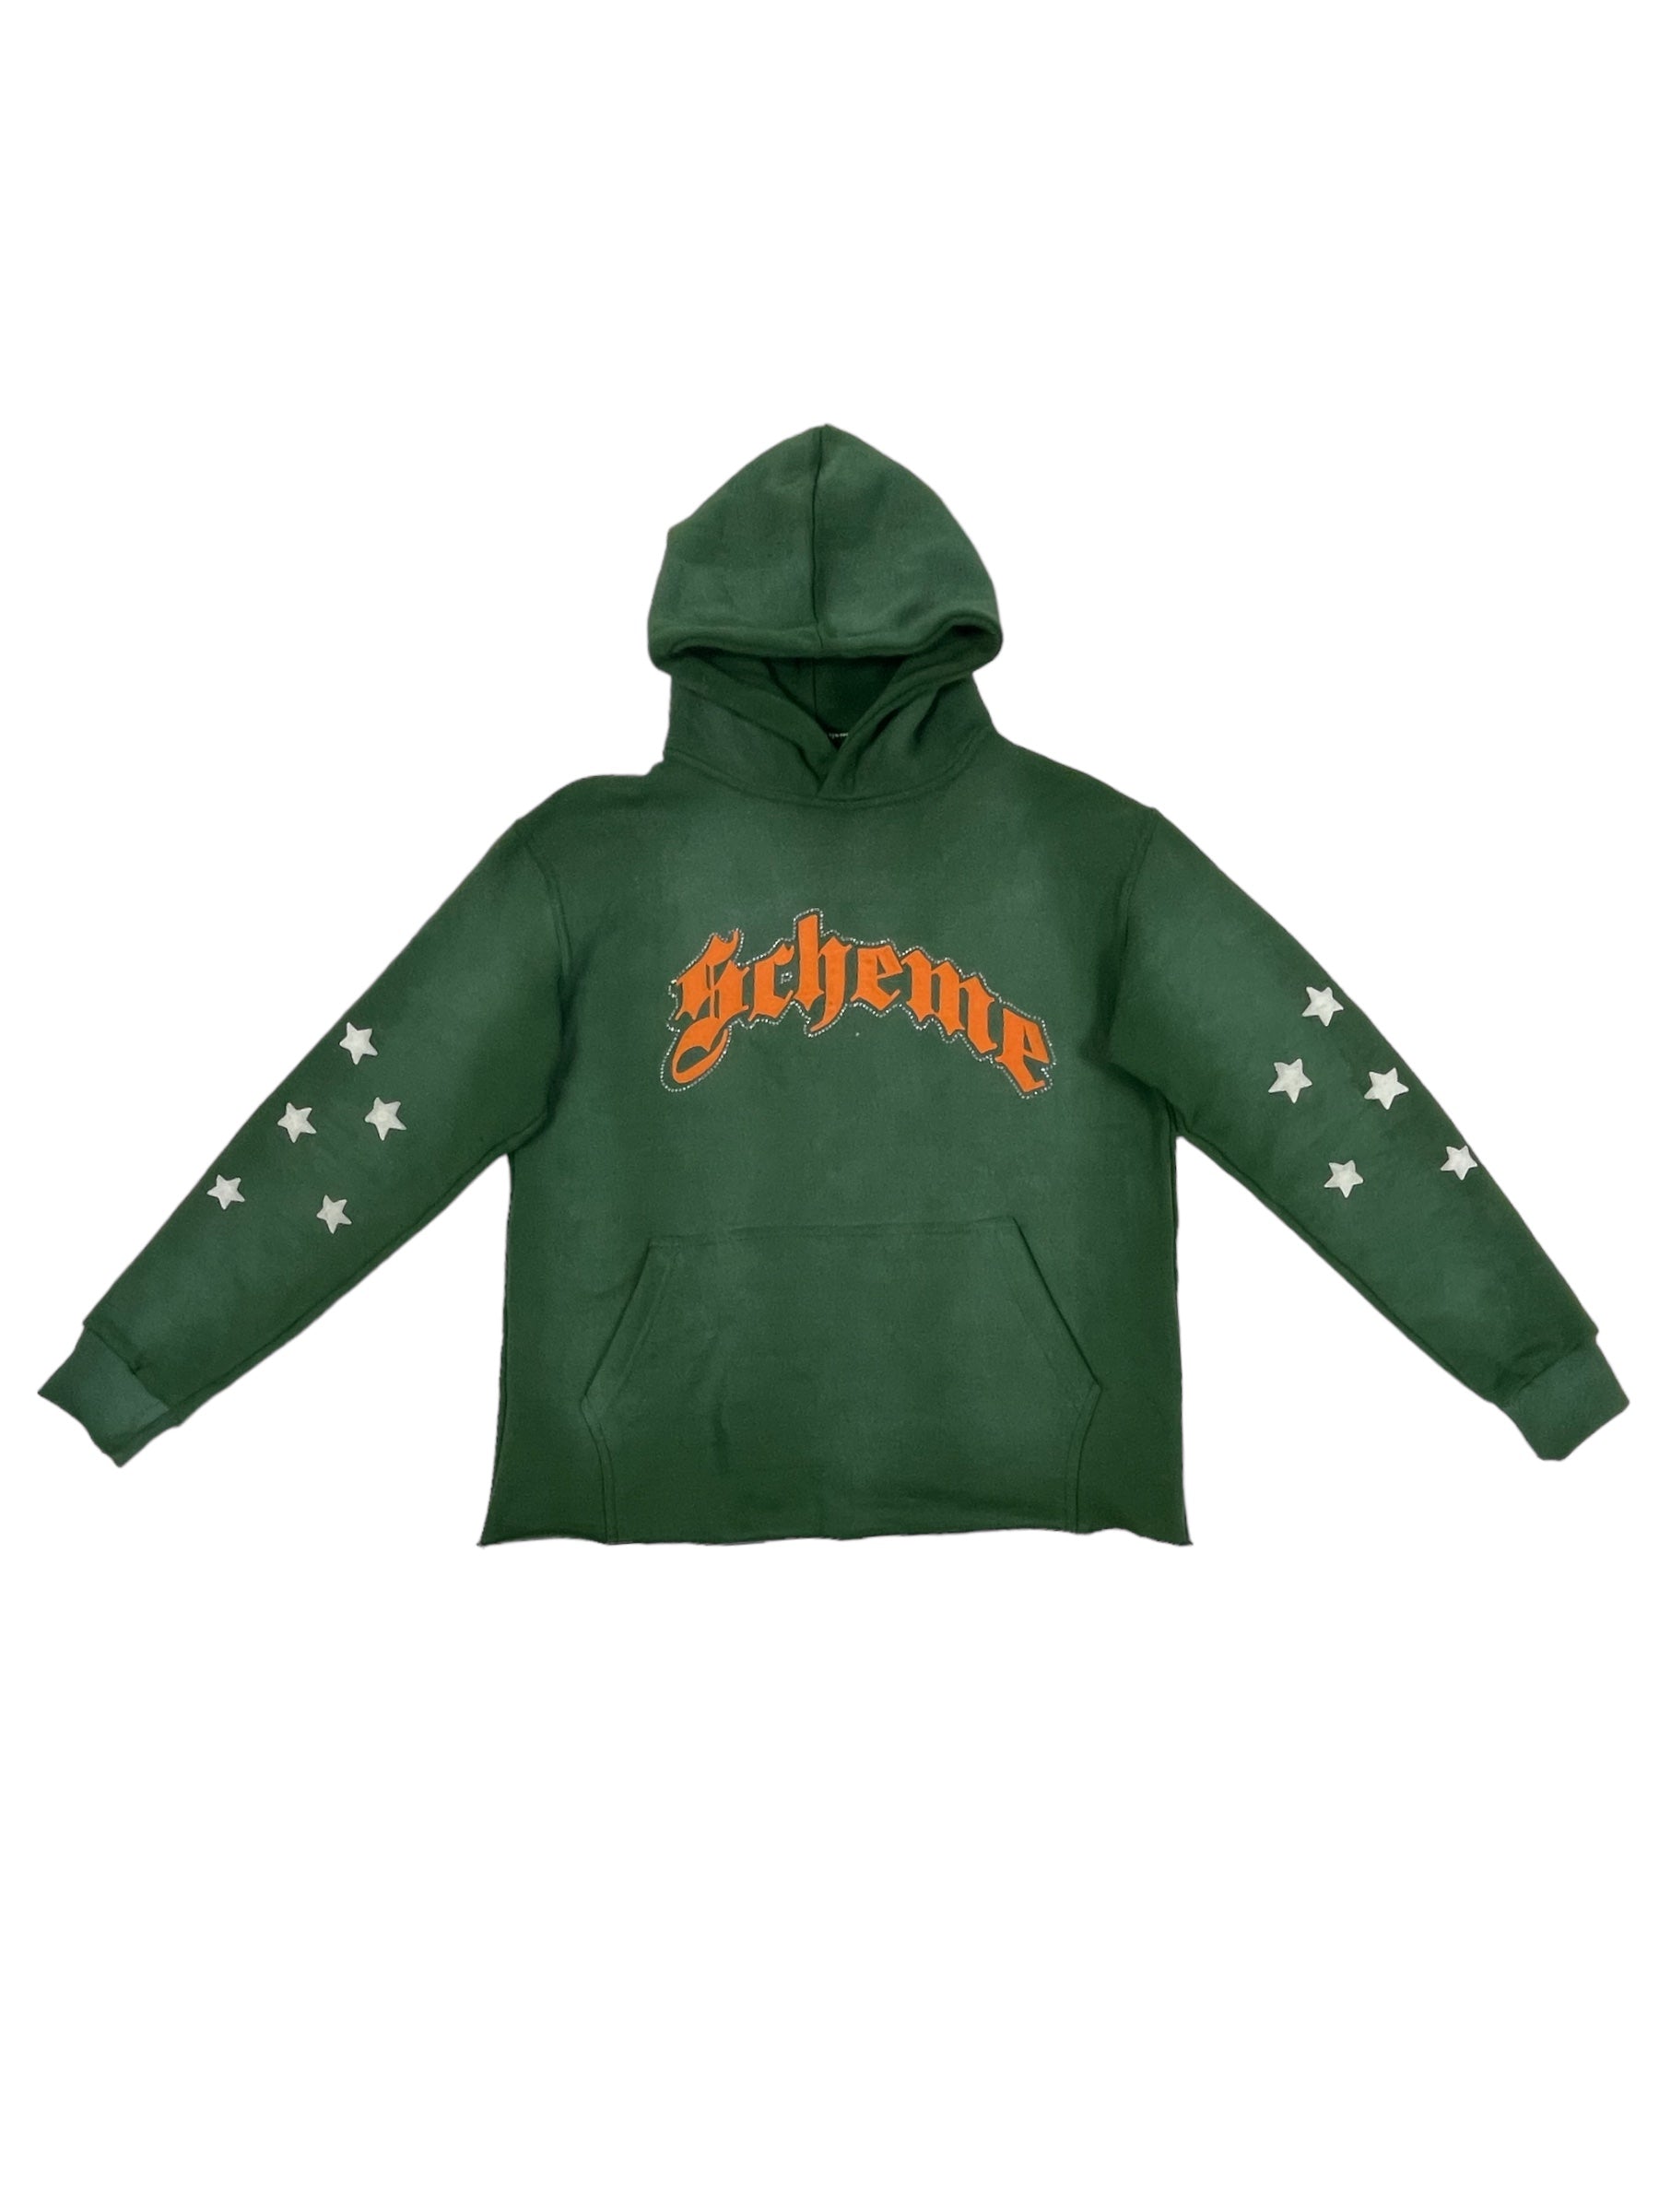 "Scheme" Rhinestone Star Puff - Washed Green Hoodie - Scheme Wear